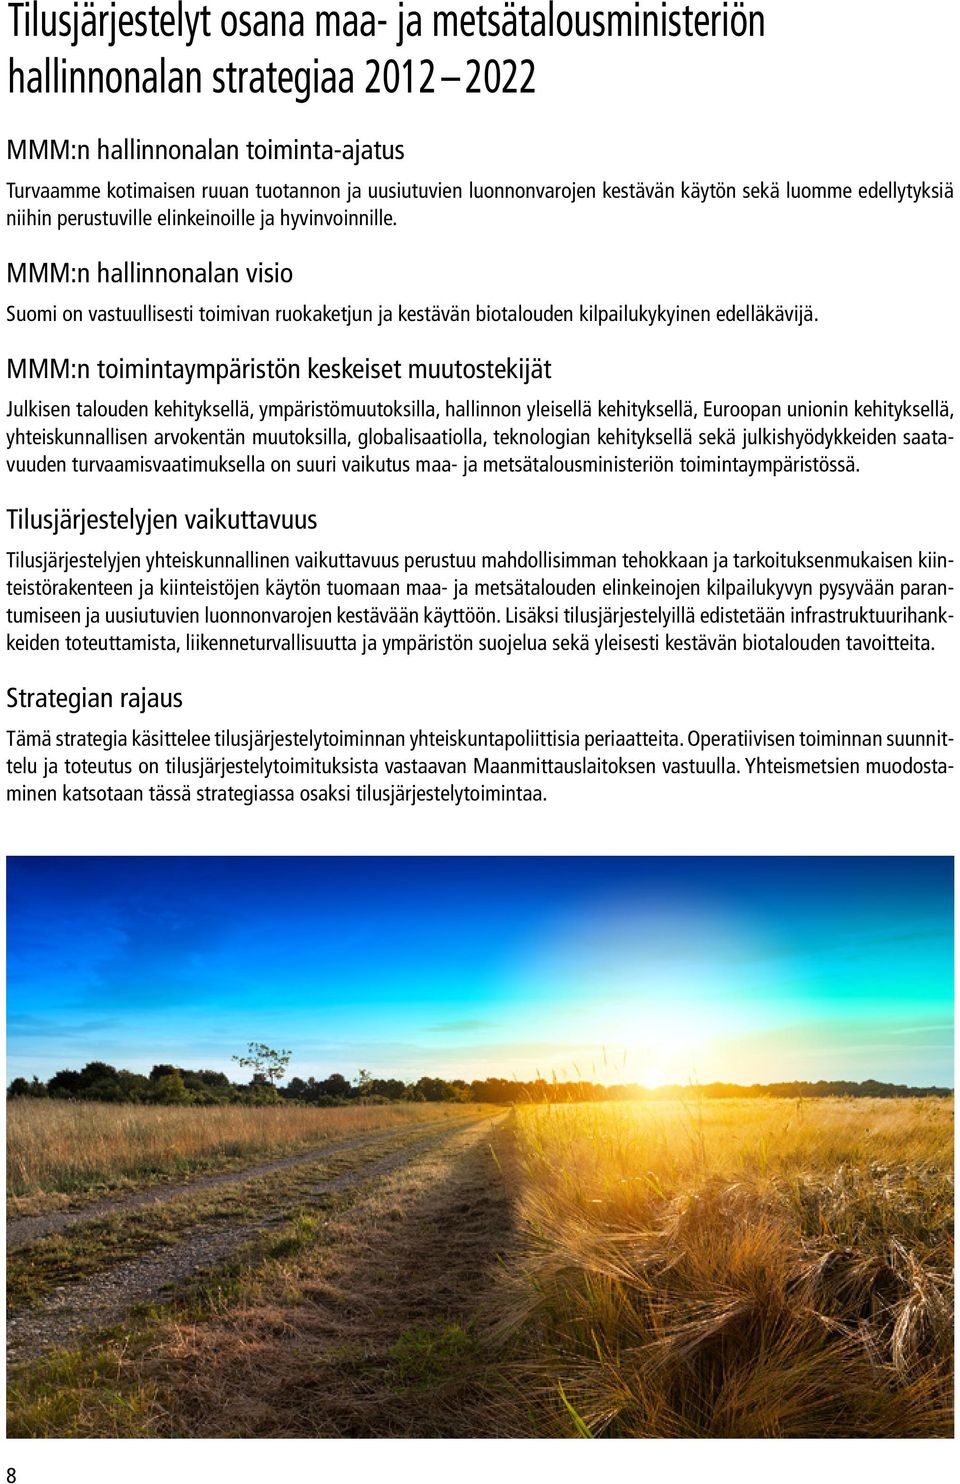 MMM:n hallinnonalan visio Suomi on vastuullisesti toimivan ruokaketjun ja kestävän biotalouden kilpailukykyinen edelläkävijä.